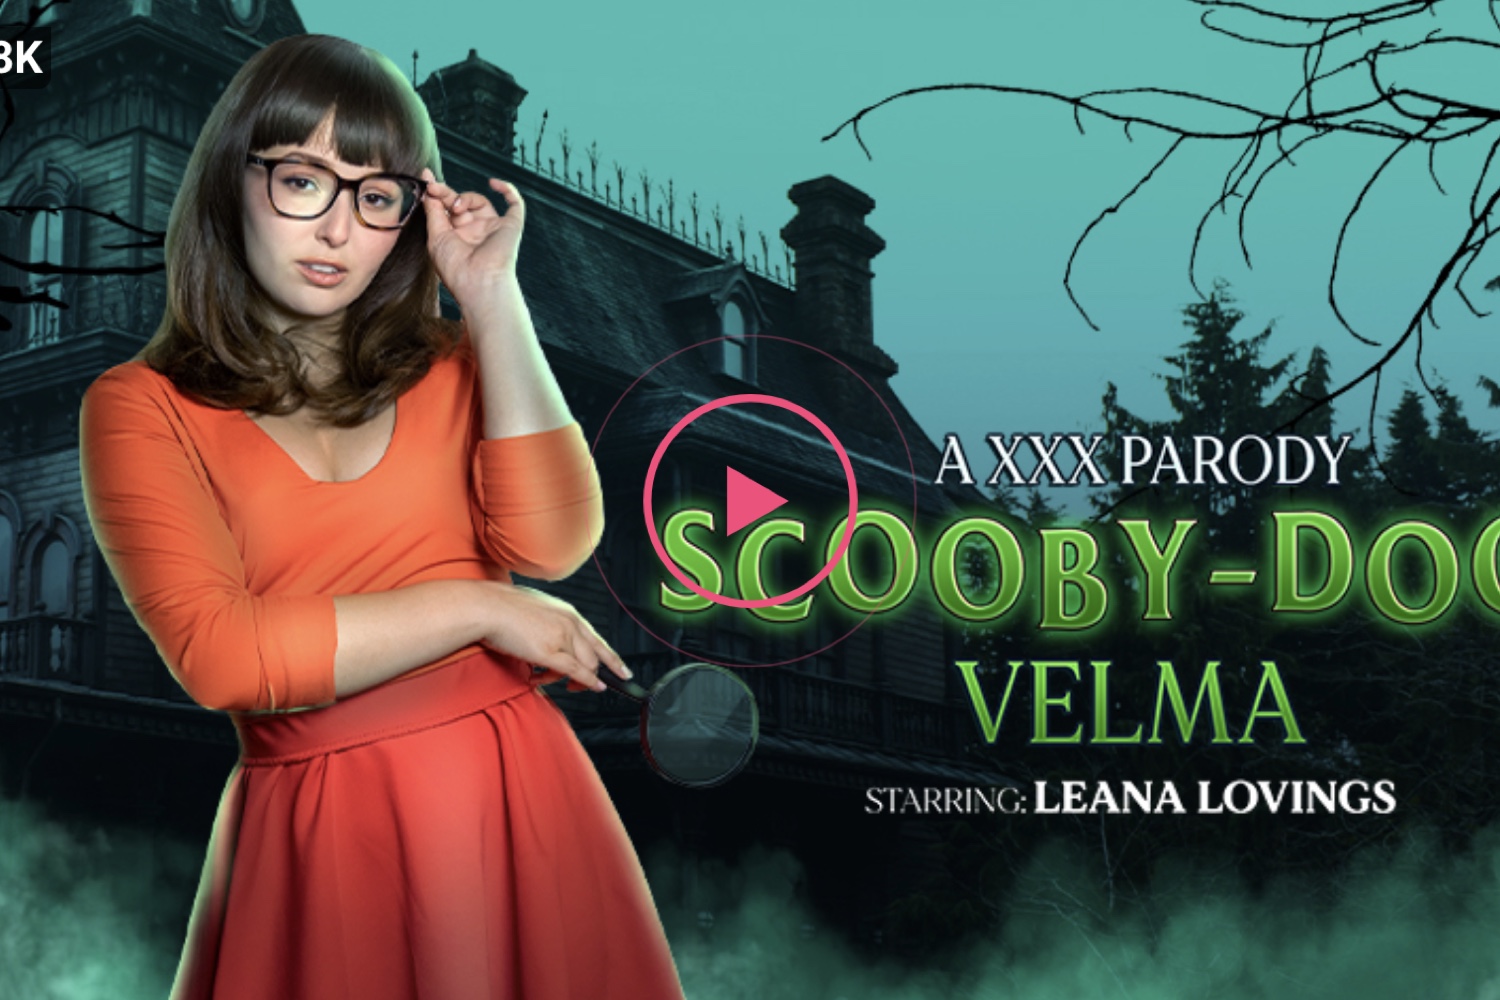 Scooby-Doo: Velma (A XXX Parody) - Leana Lovings VR Porn - Leana Lovings Virtual Reality Porn